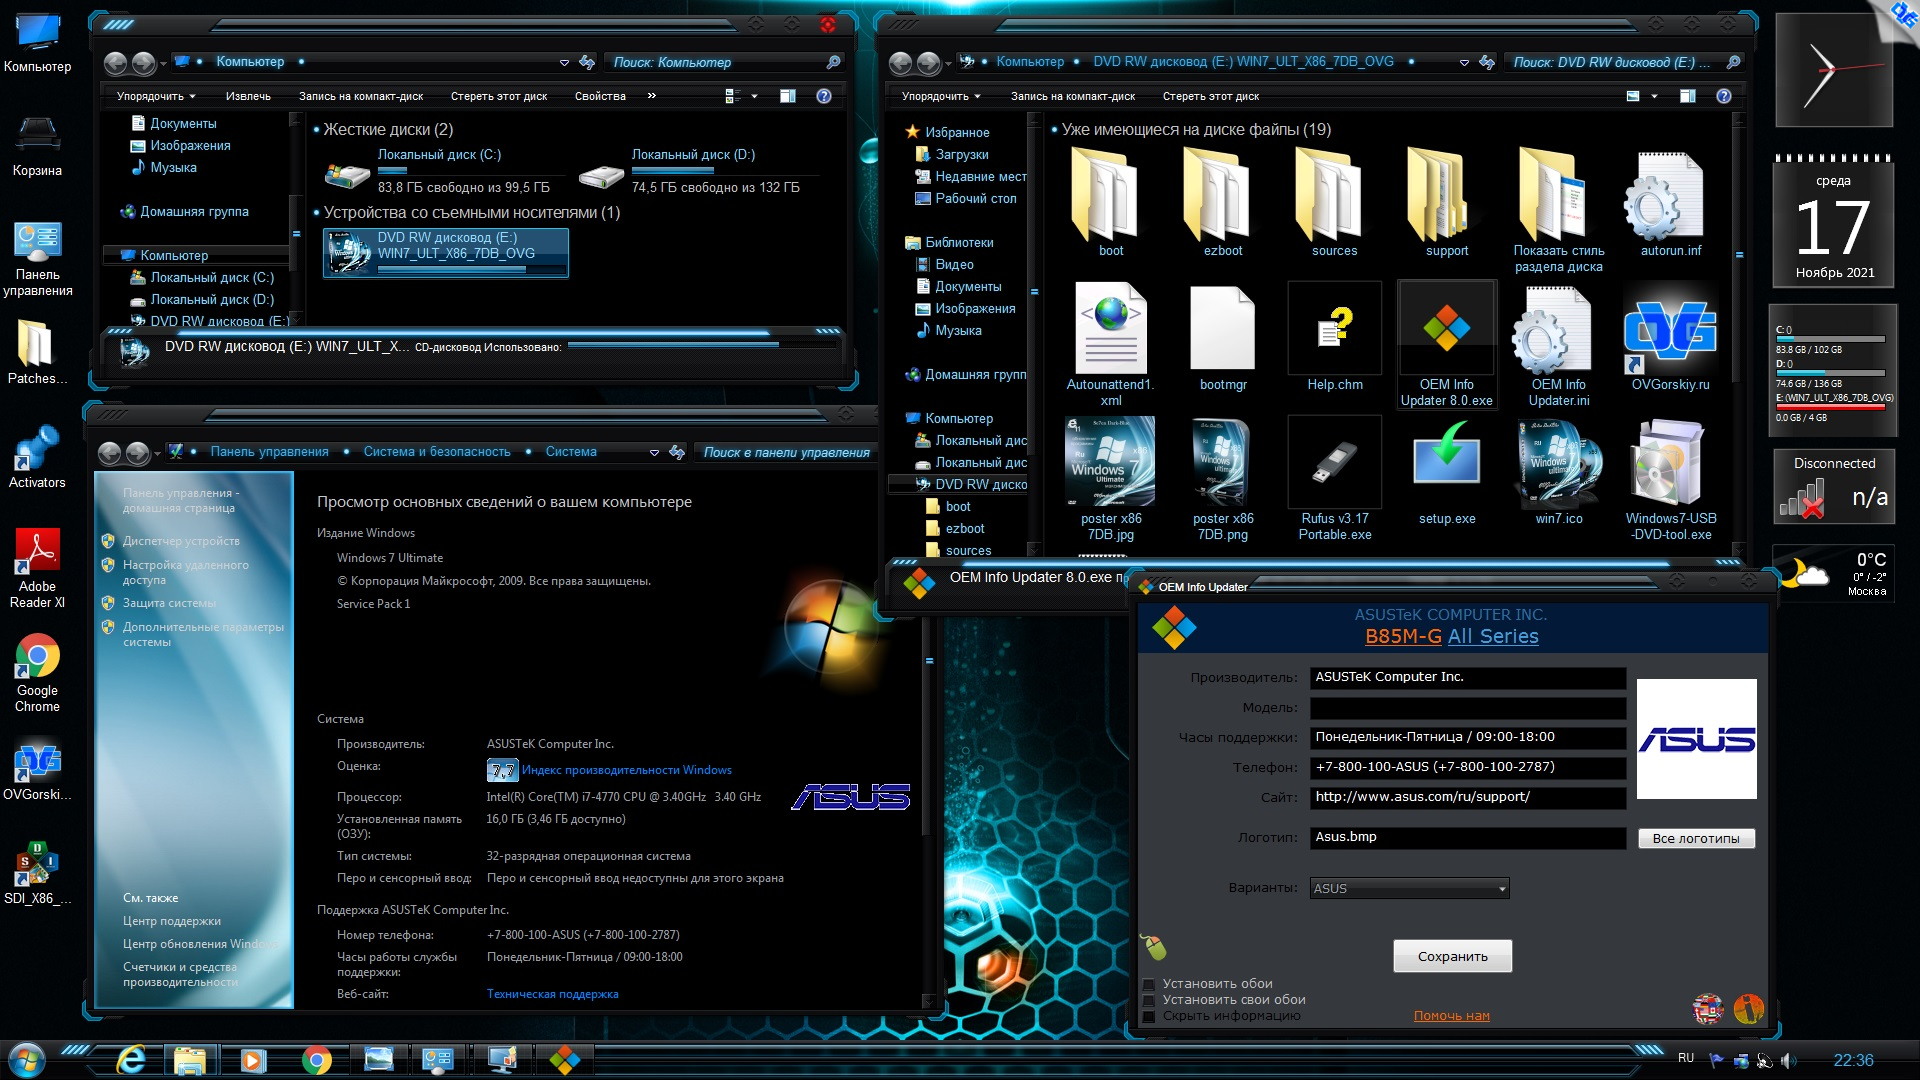 Microsoft® Windows® 7 Ultimate Ru x86 SP1 7DB by OVGorskiy 11.2021 1DVD